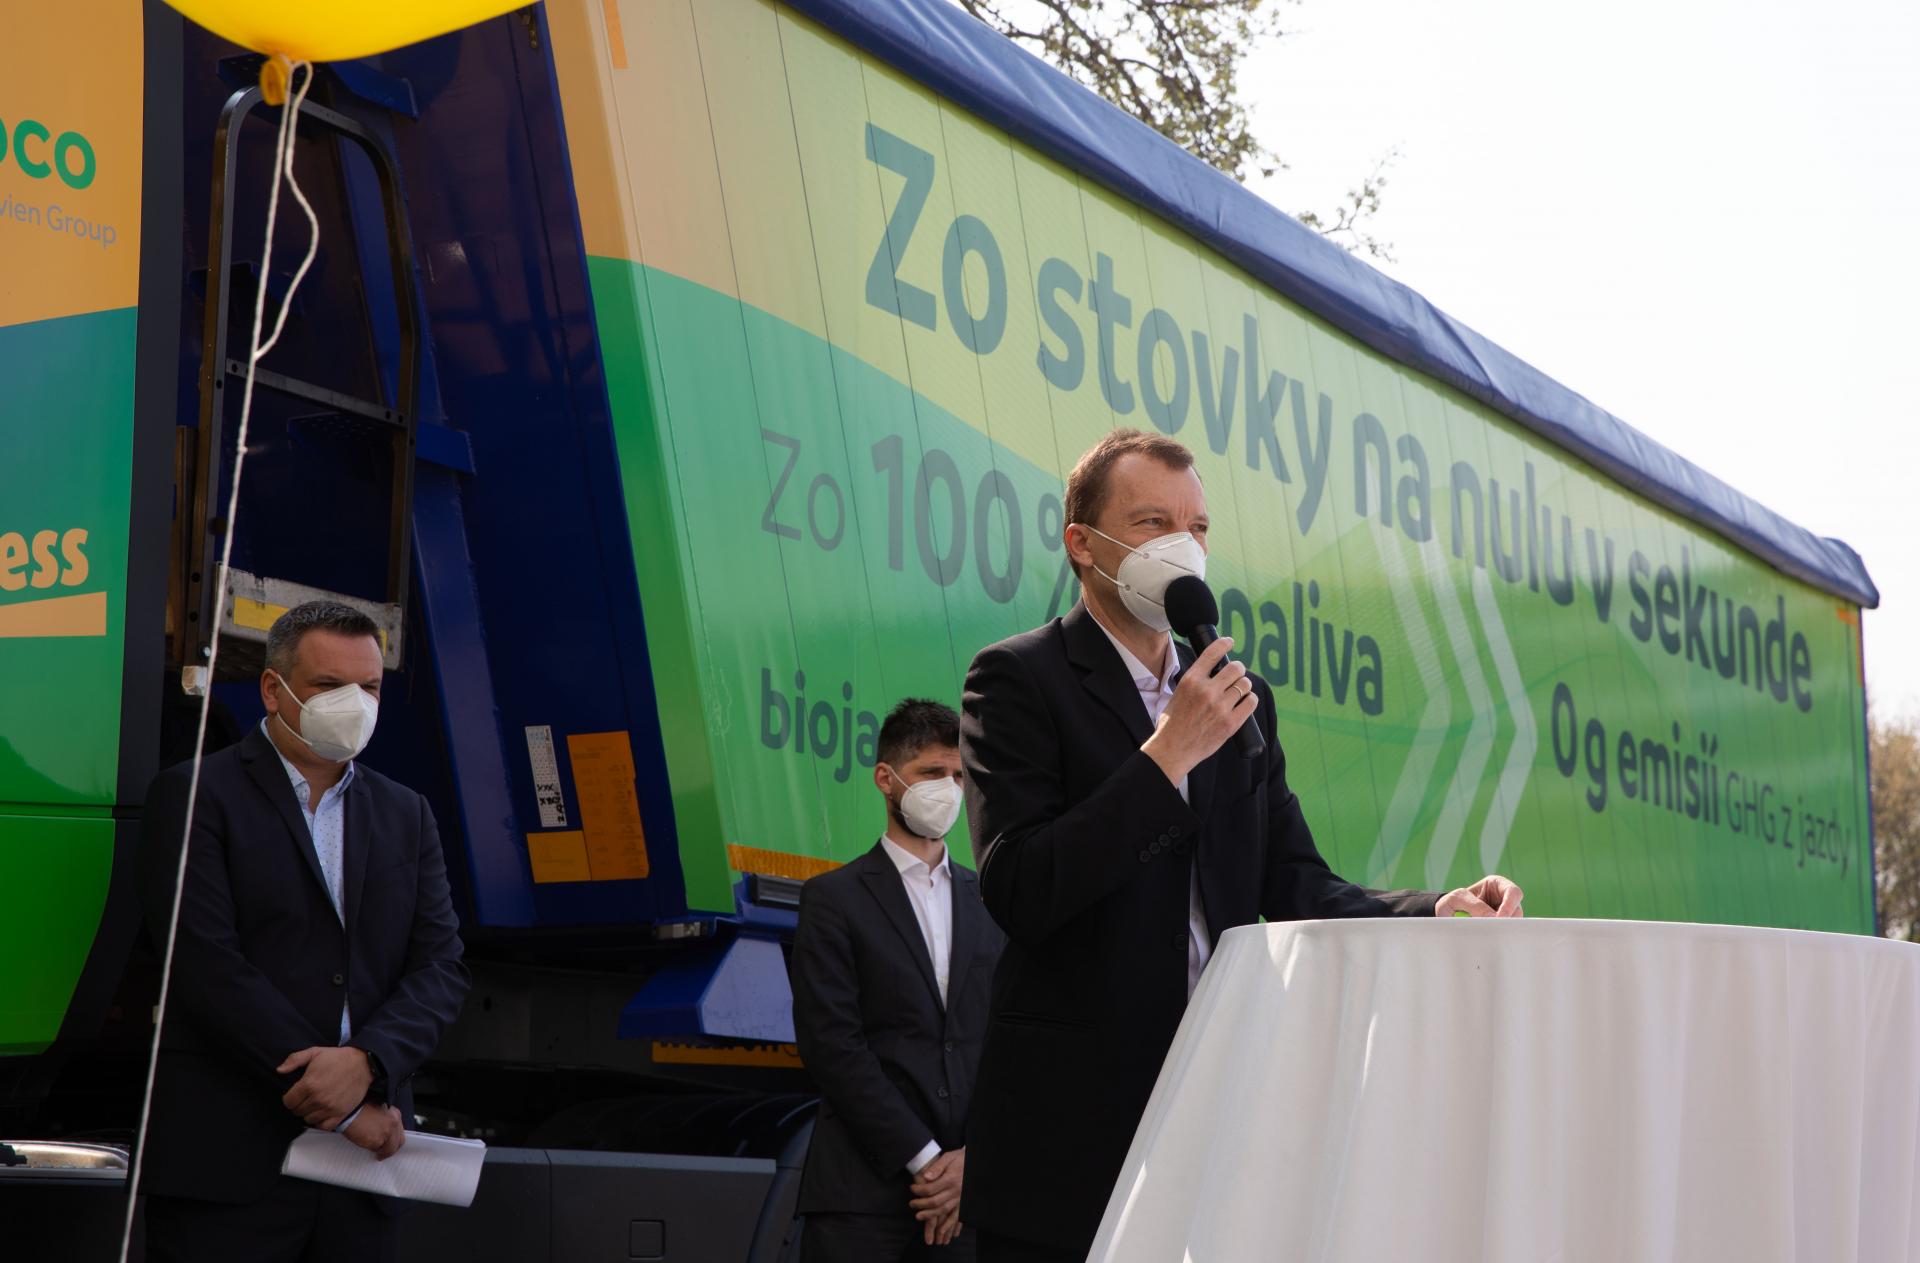 Vľavo Pavol Piešťanský, Yellow Express, v popredí Radoslav Jonáš, Meroco a za ním Martin Šácha zo Združenia pre výrobu a využitie biopalív.